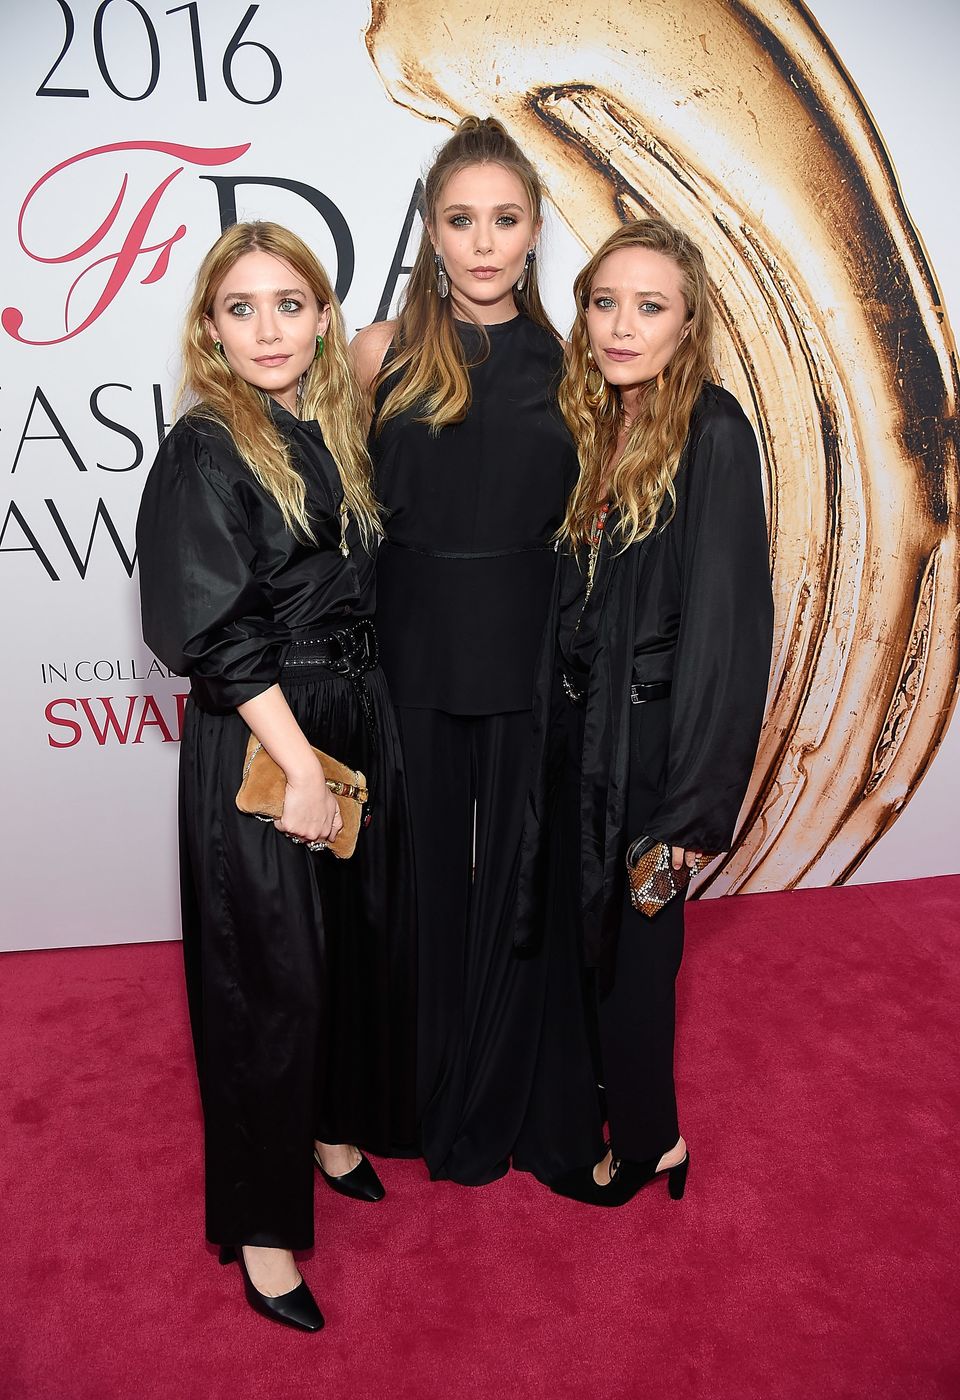 Ashley, Elizabeth and Mary-Kate Olsen